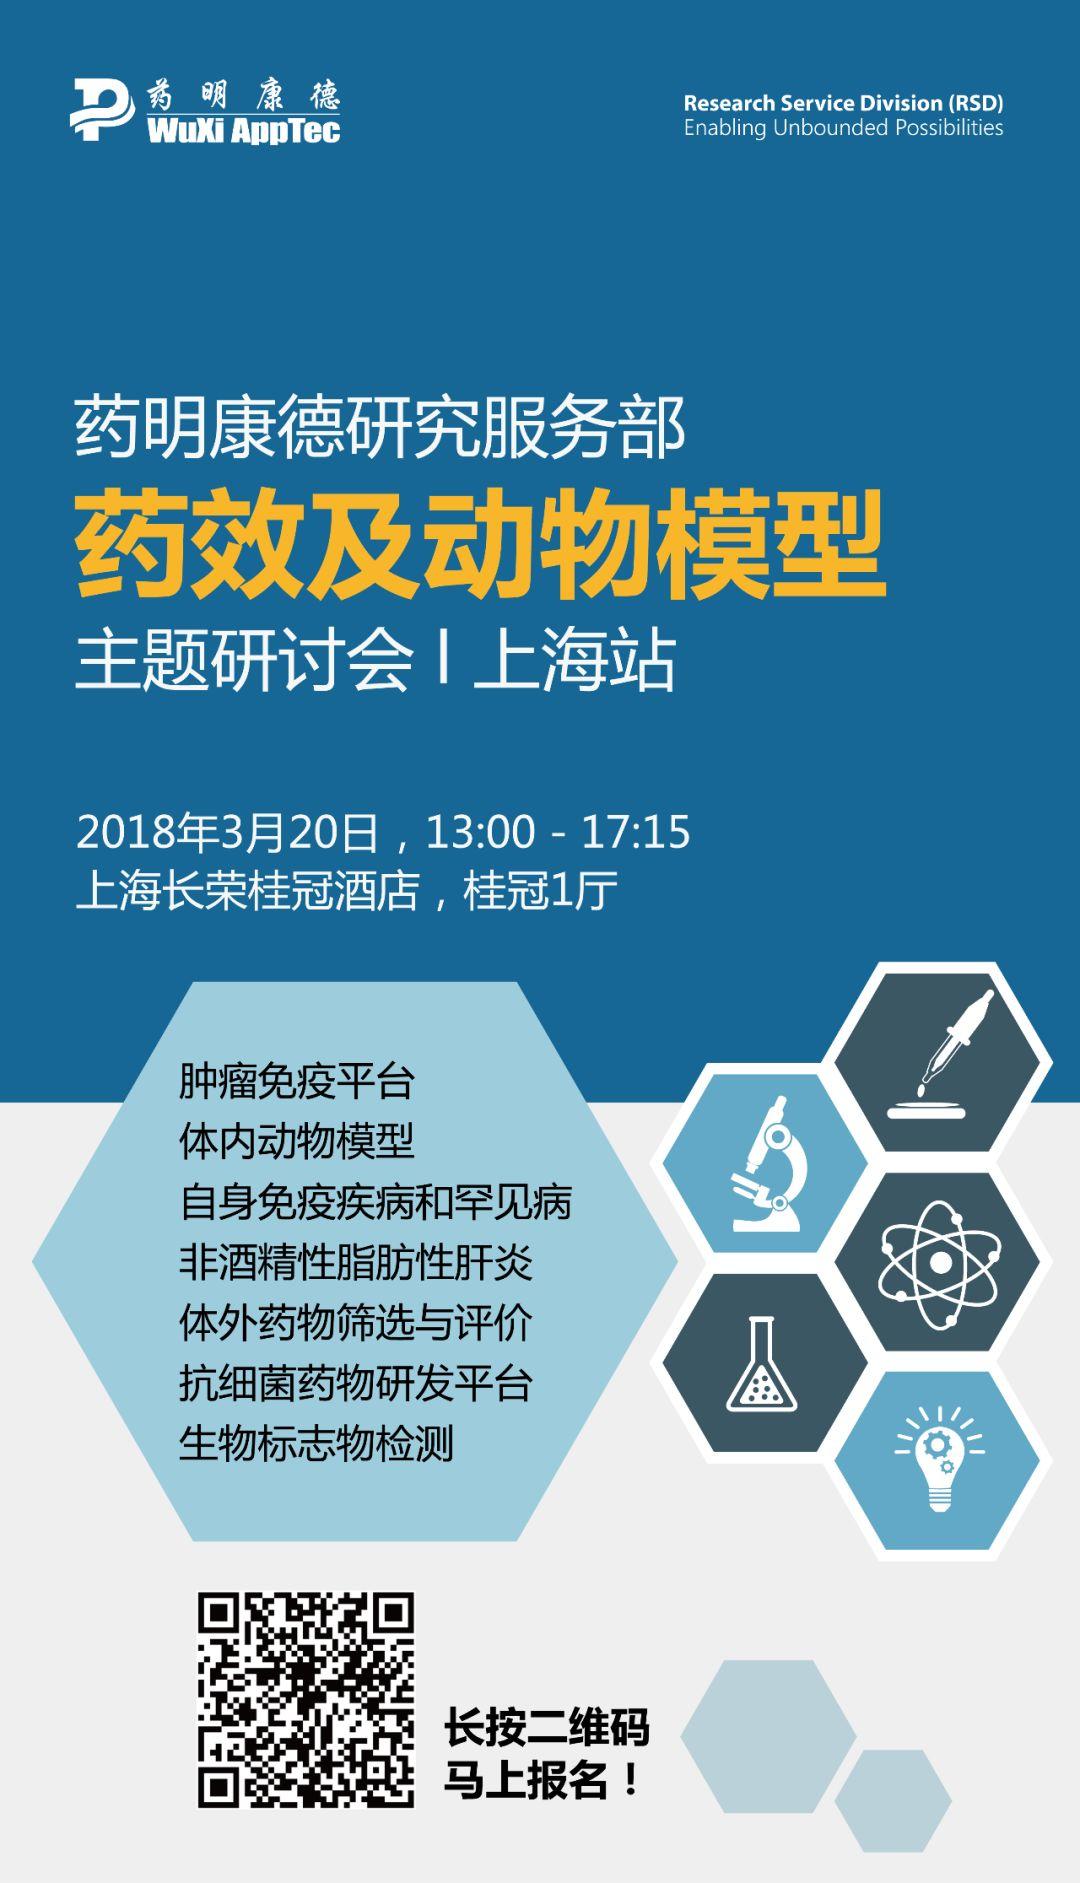 药明康德研究服务部药效及动物模型主题研讨会 l 上海站